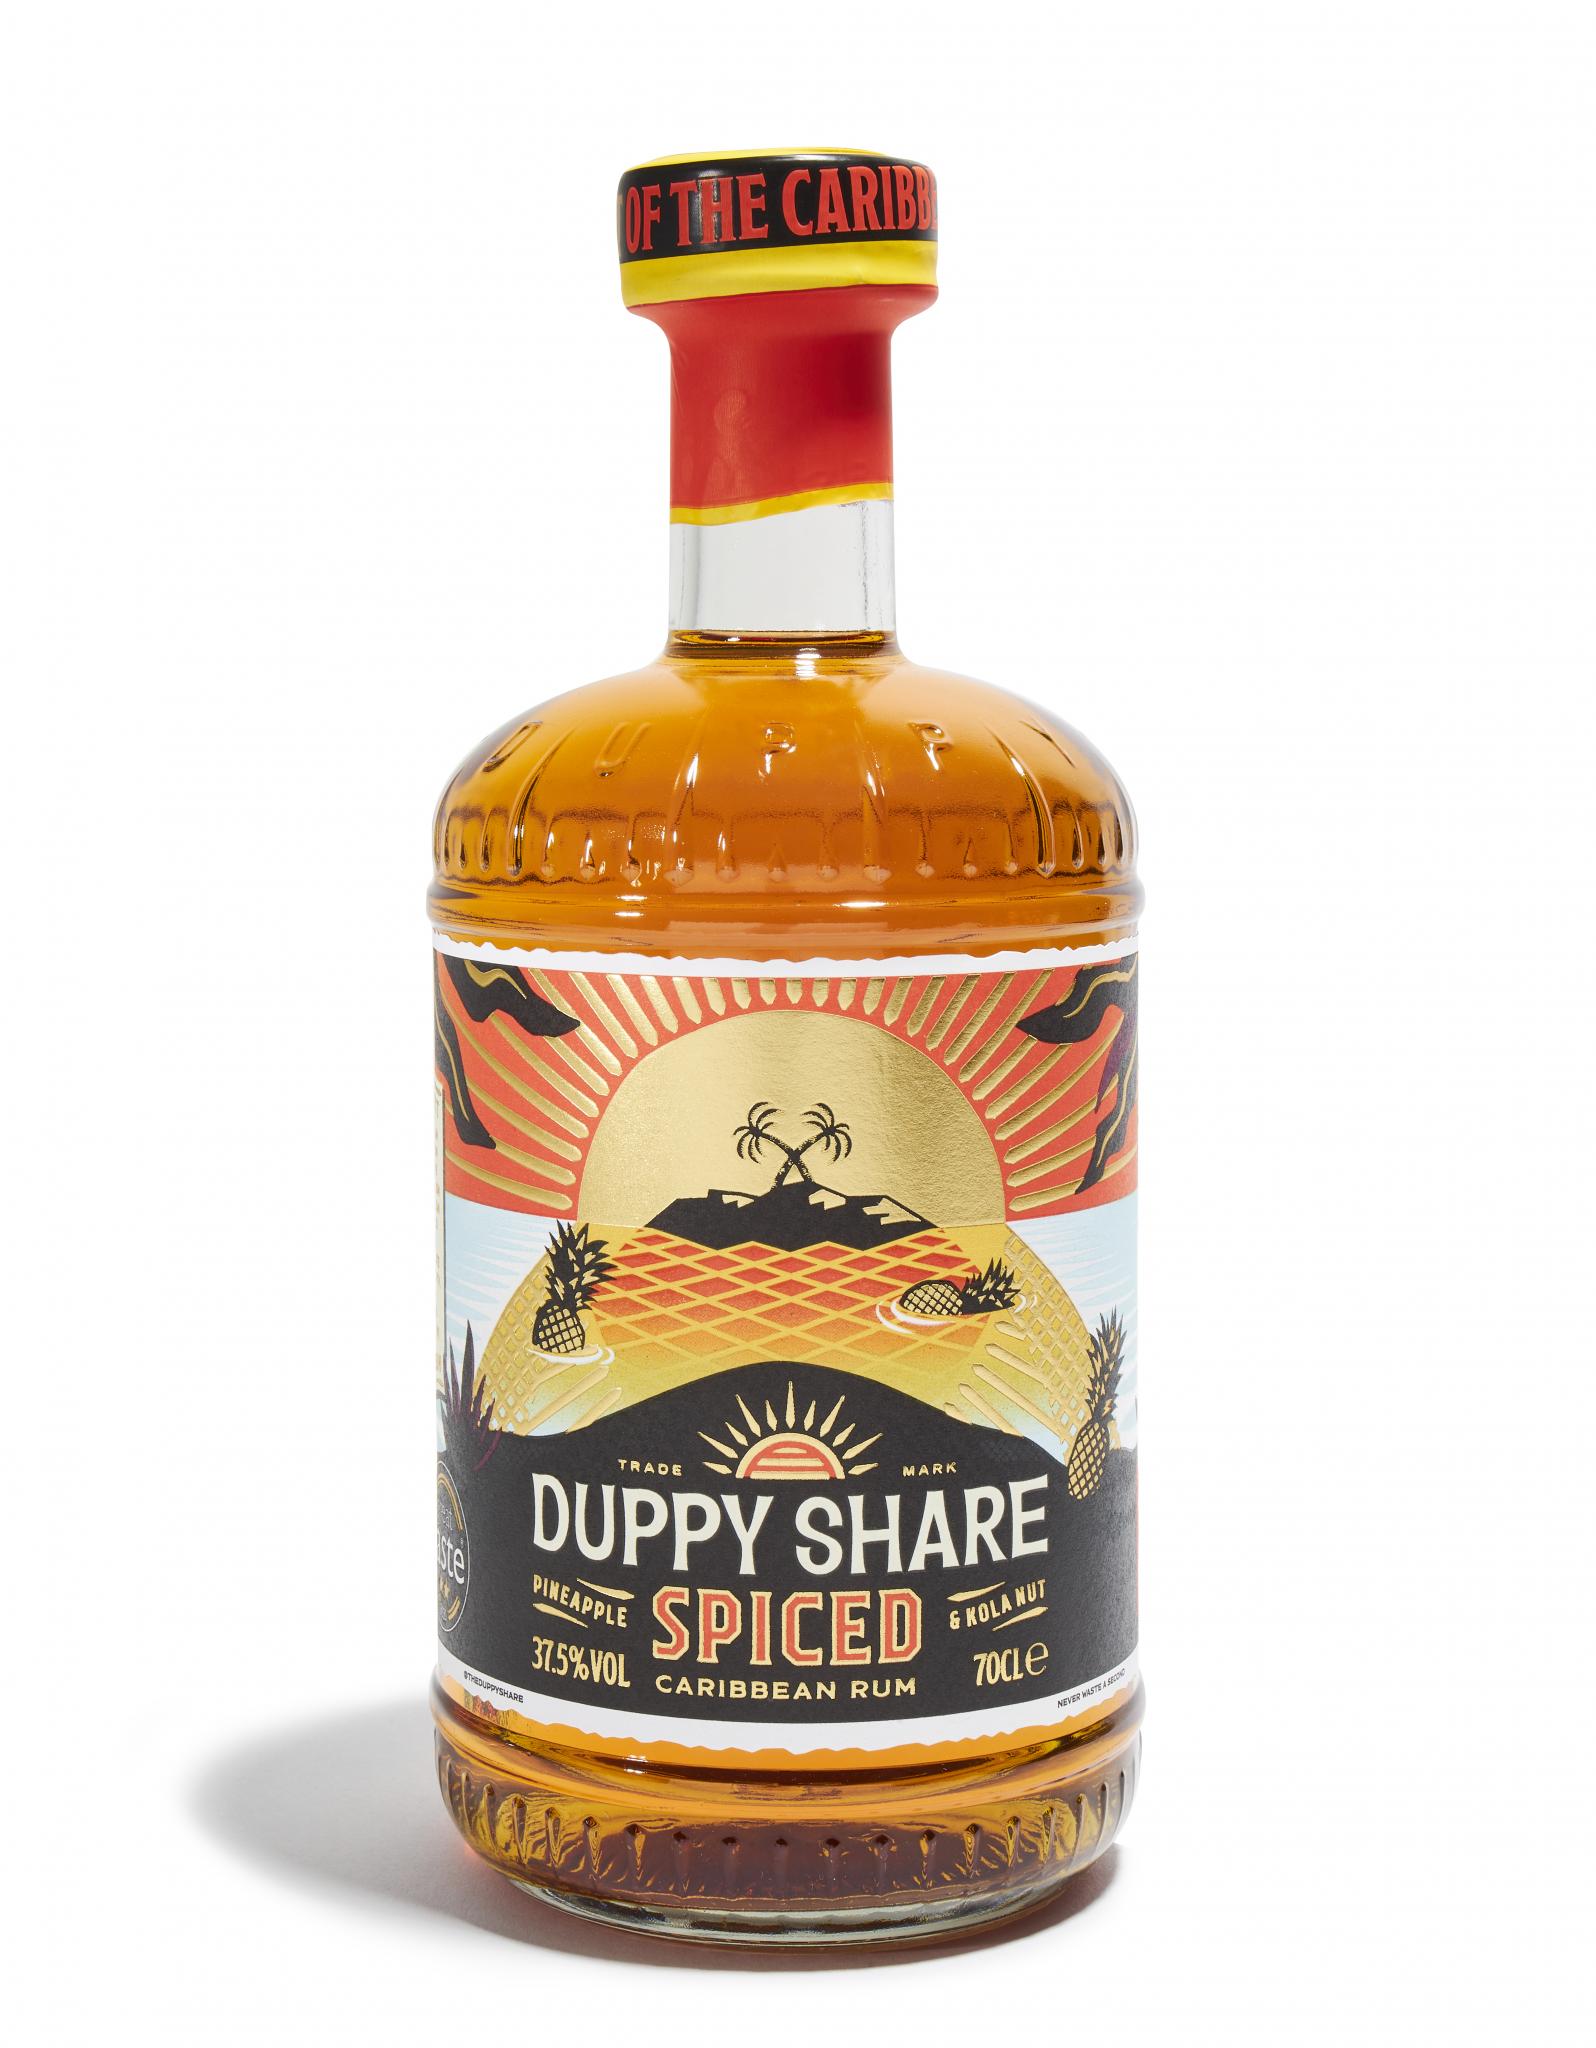 Duppy Share Spiced Rhum